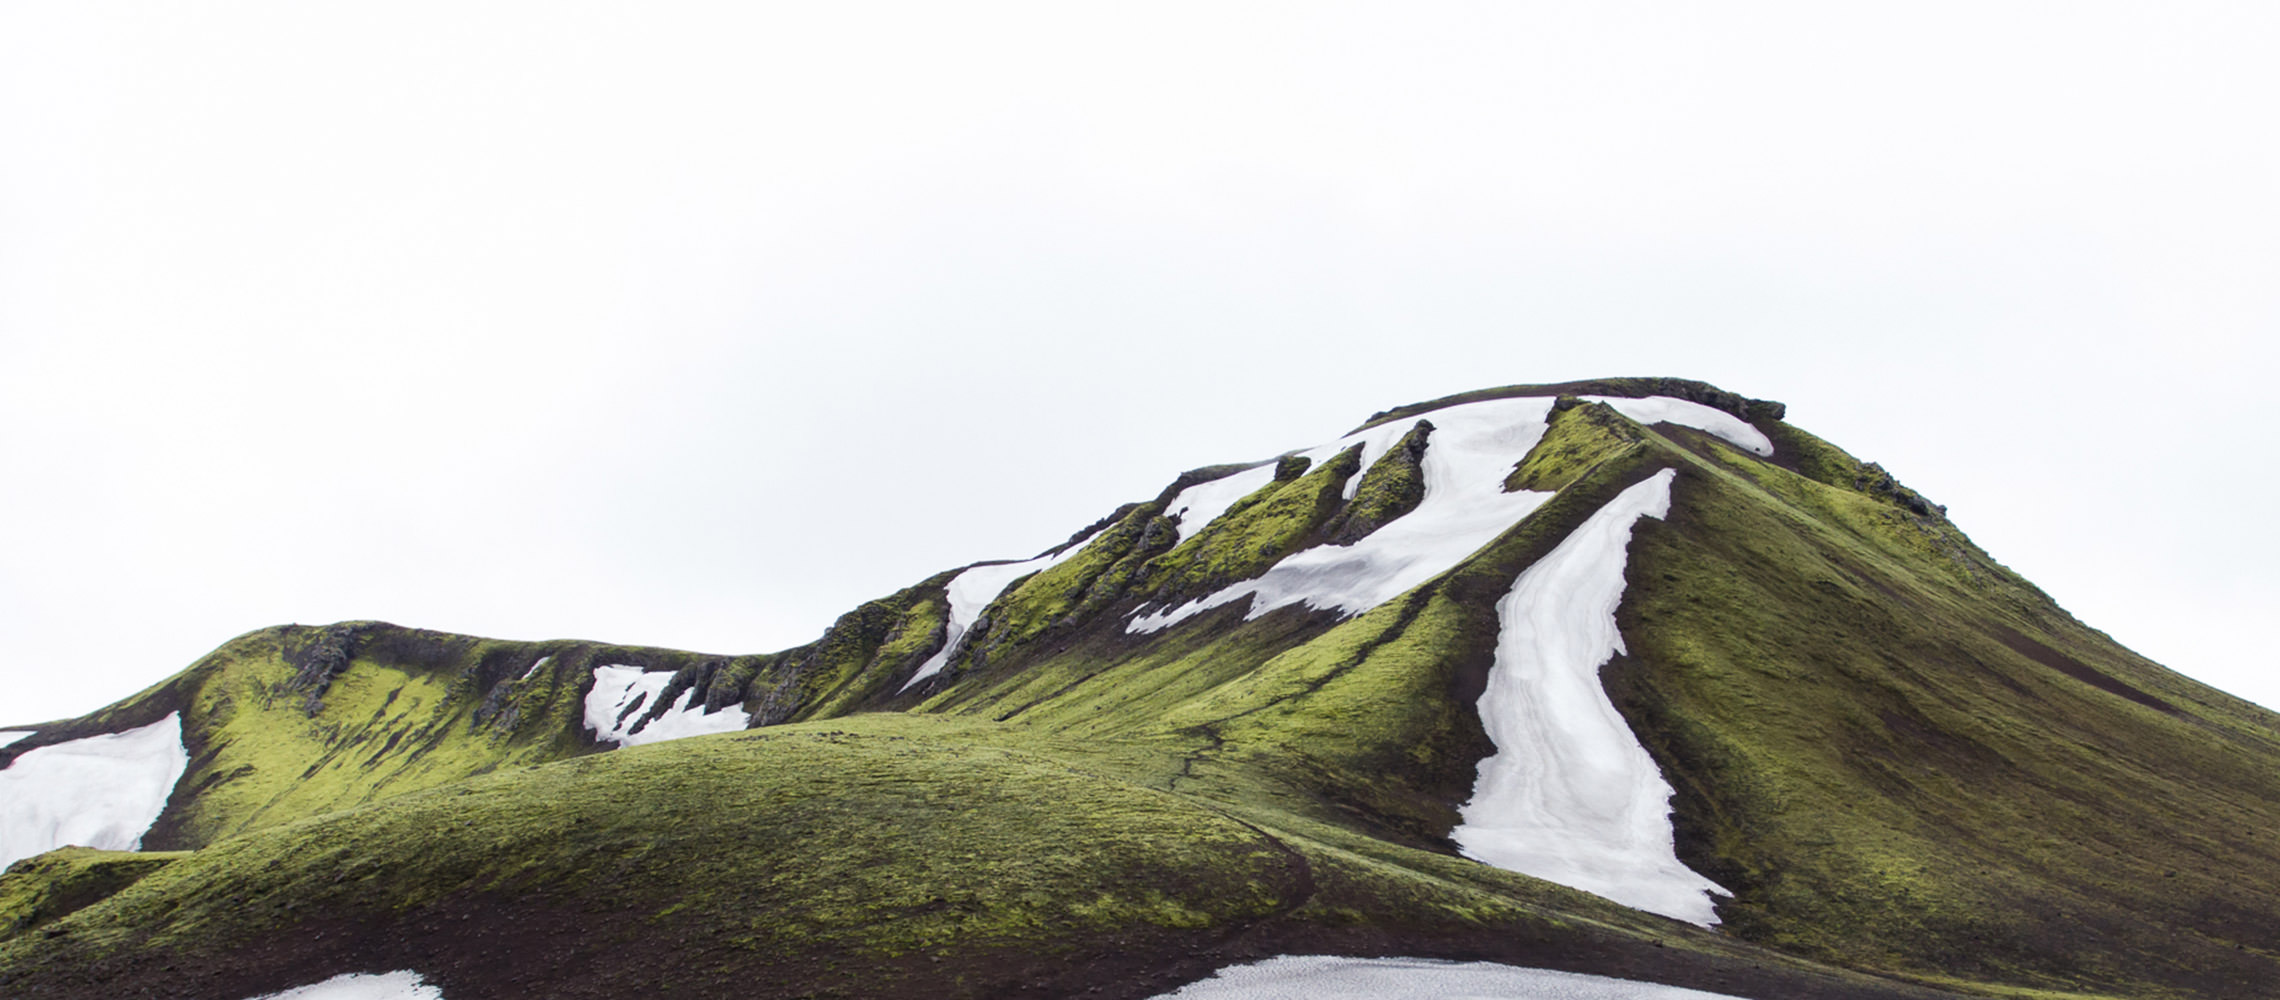 Paesaggio di montagna coperto da erba verde con ghiacciai isolati.